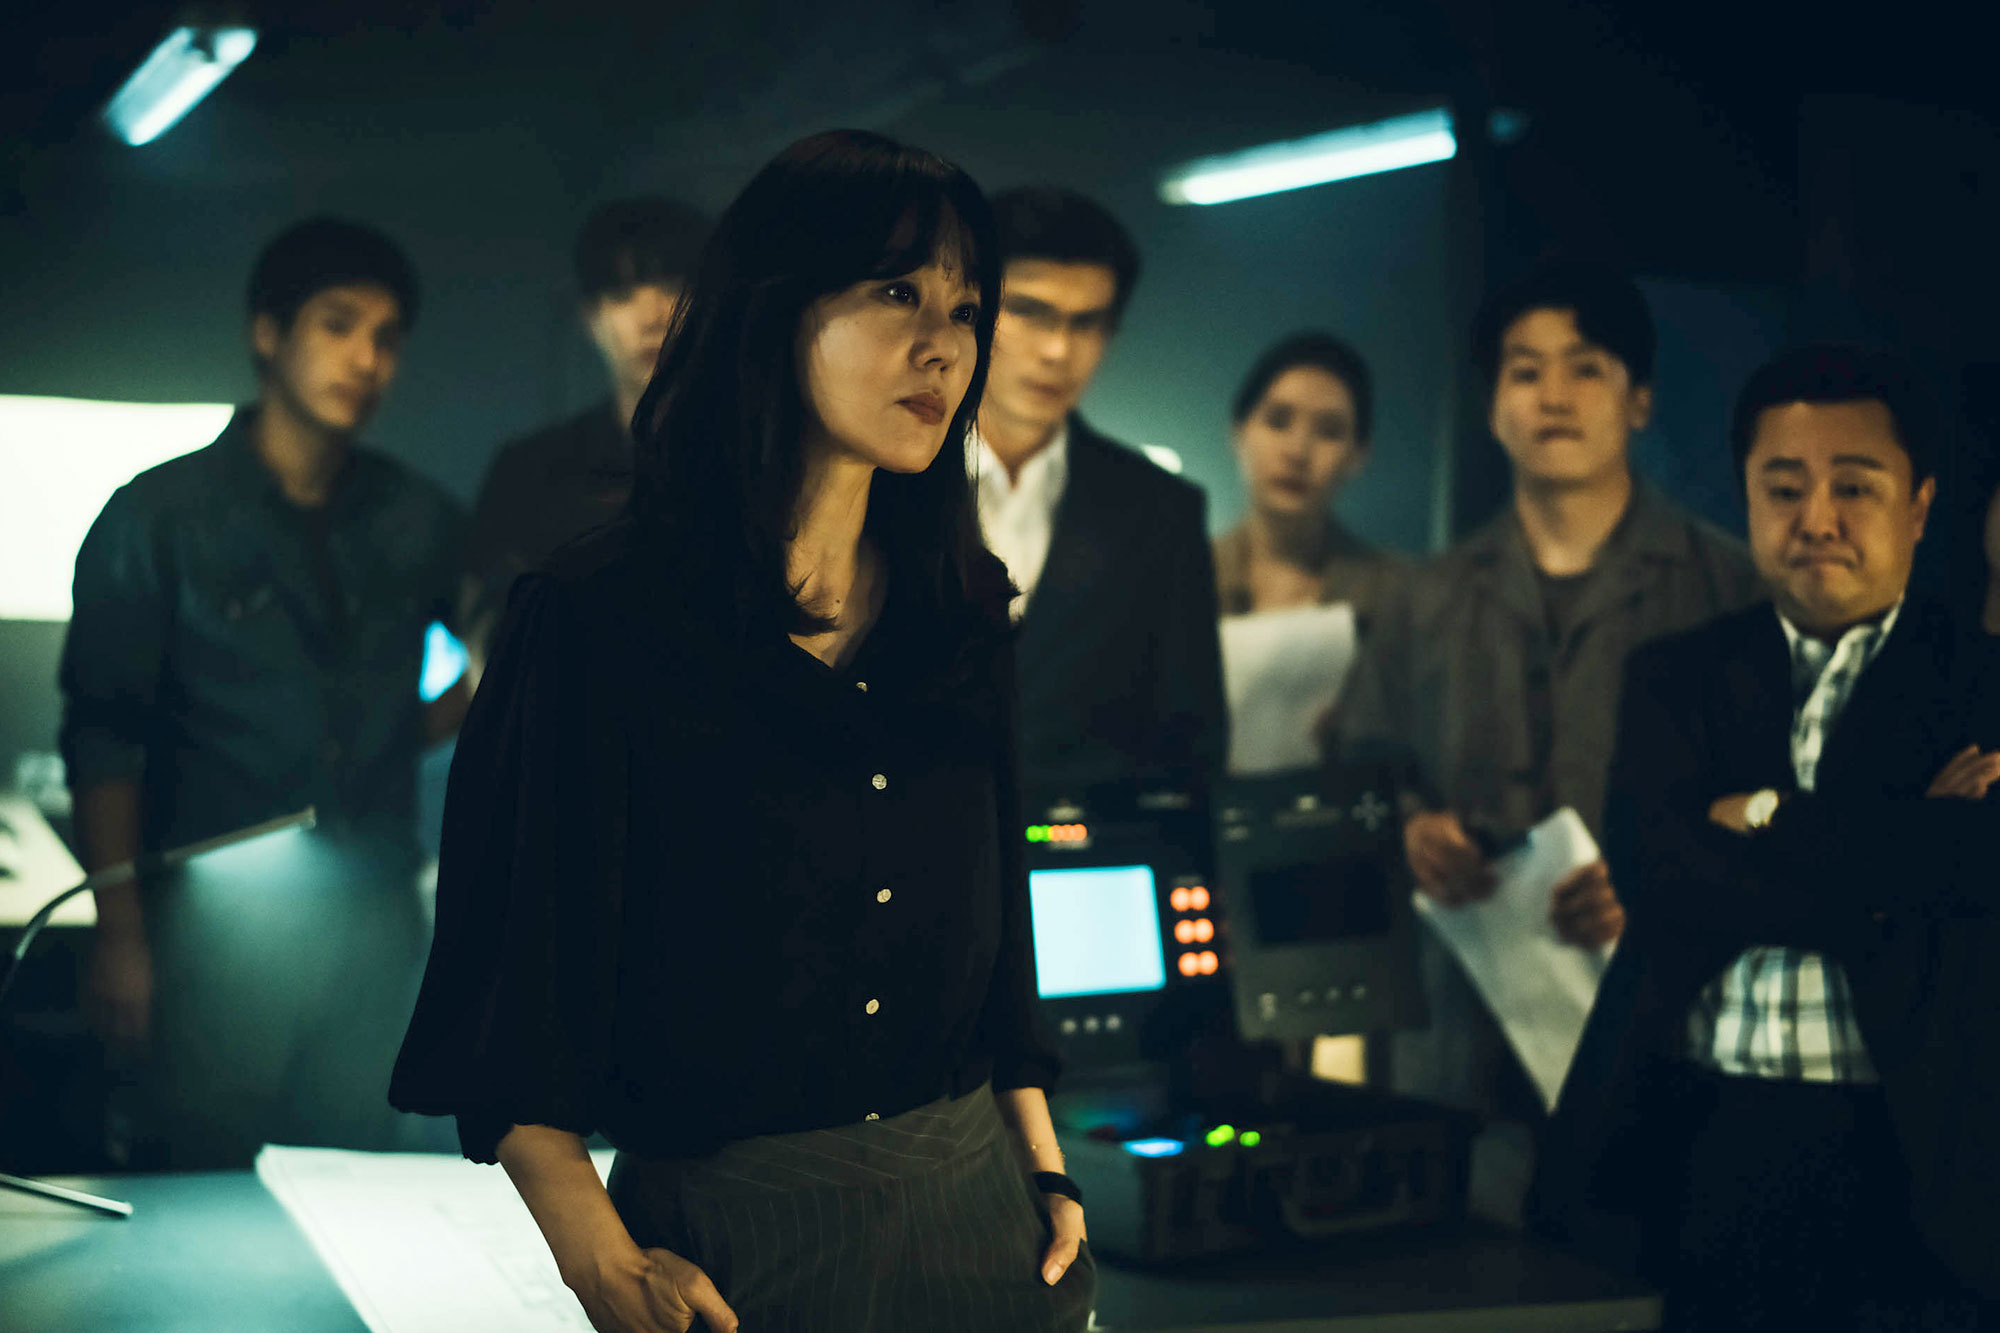 Mỹ nhân Hàn từng đóng nữ chính bom tấn Avatar: Diễn xuất xúc động, tiếc rằng không thể góp mặt chính thức - ảnh 7